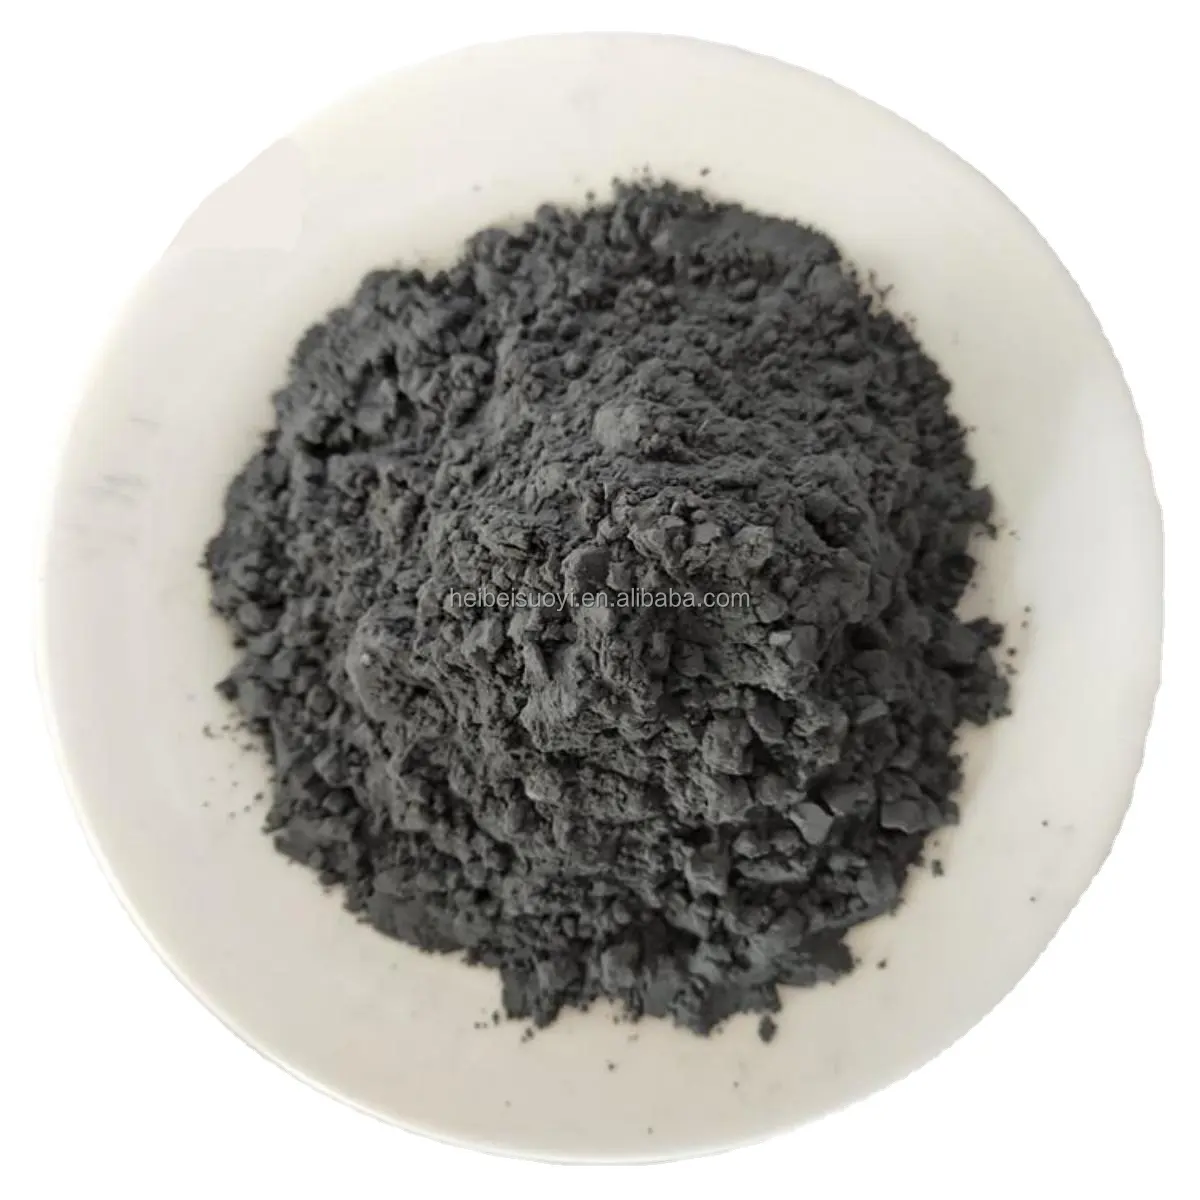 Polvo de óxido de cobalto co3o4, polvo metálico de cobalto, 99.96% min de densidad, CAS: 7440-48-4